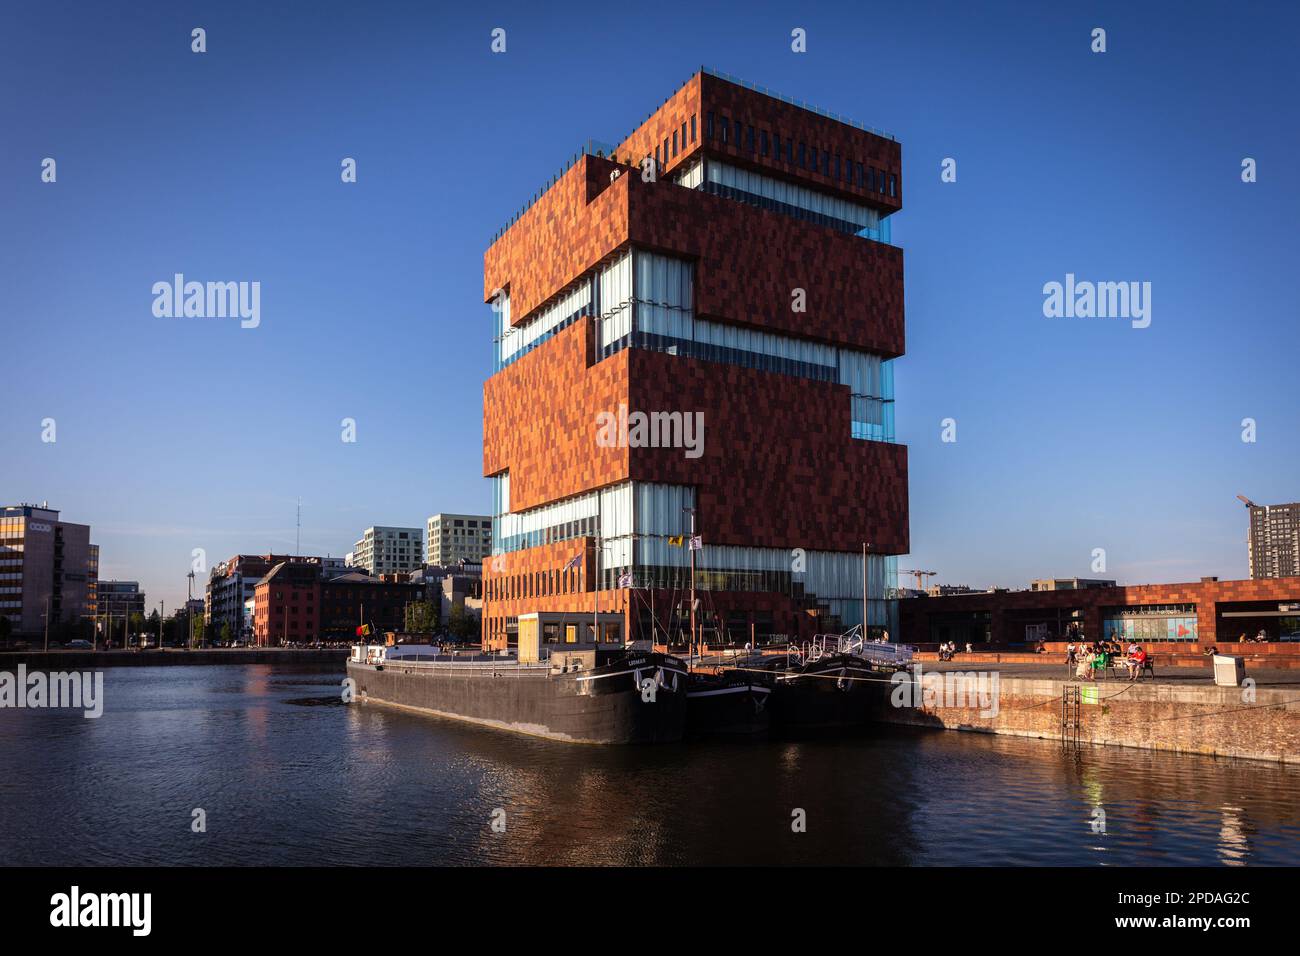 Das Museum aan de Stroom, bekannt als MAS, ist ein Museum in Antwerpen mit einer Sammlung über die maritime Geschichte und Kultur des Hafens. Belgien. Stockfoto